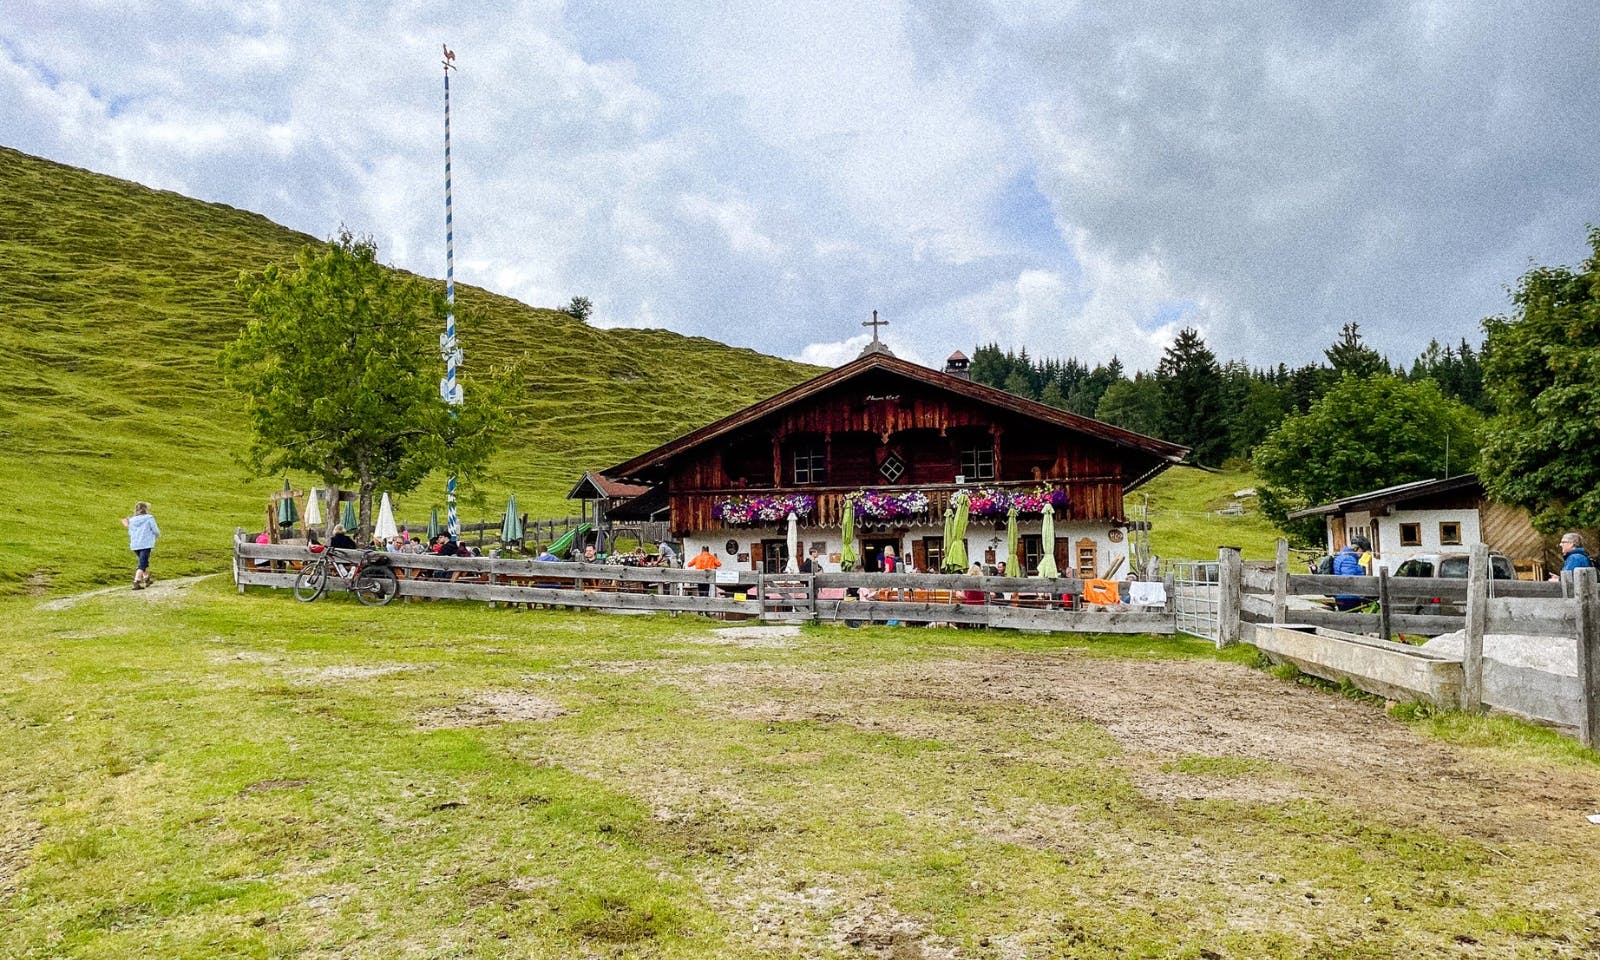 Angleralm in Tirol